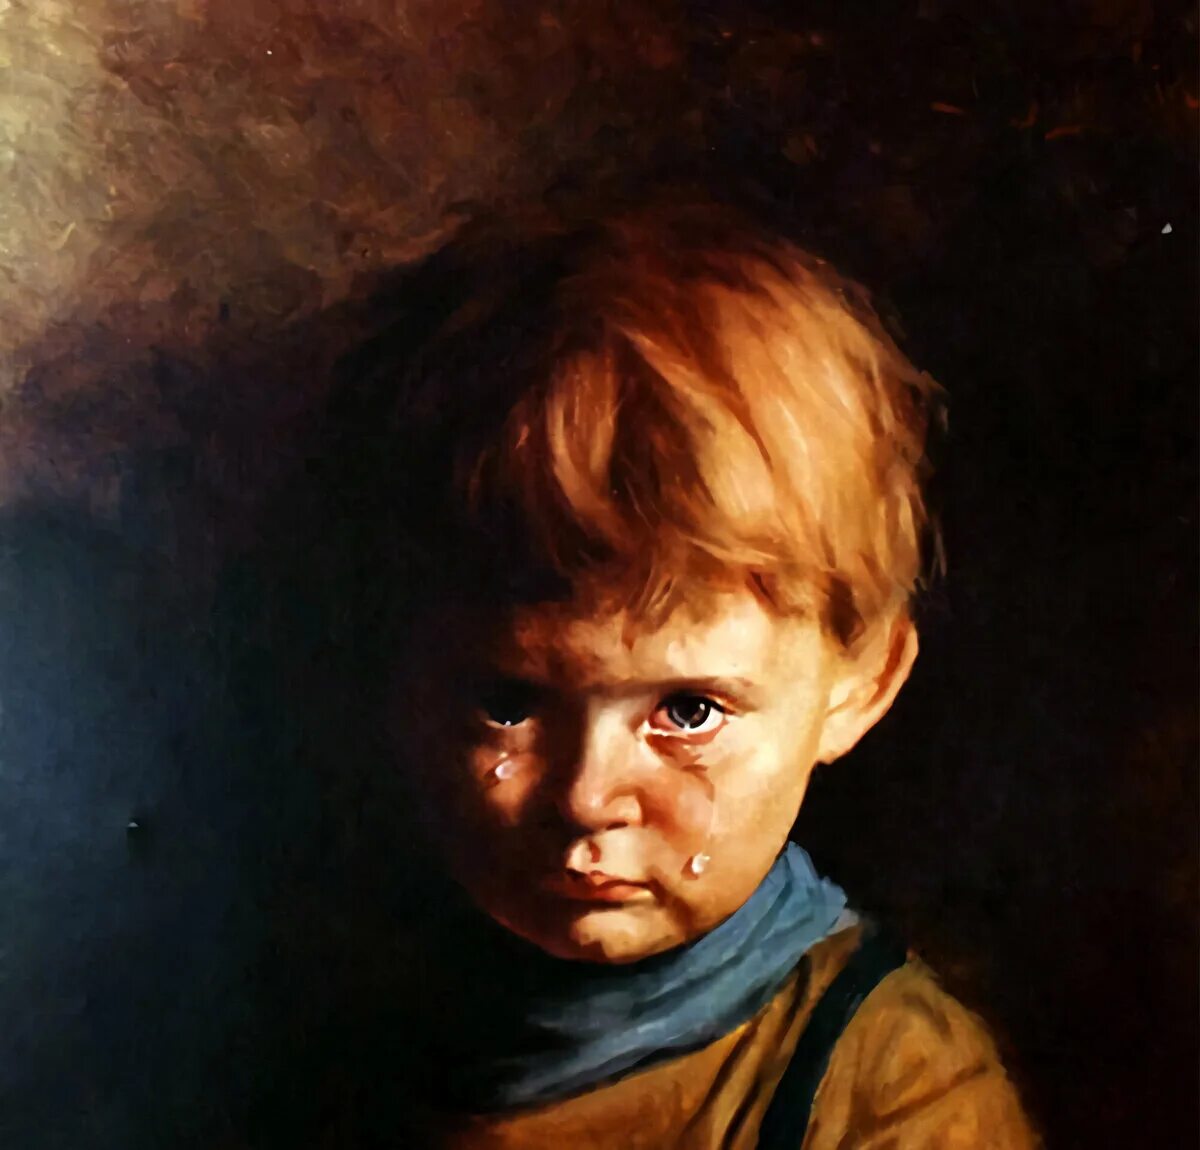 Джованни Браголин Плачущий мальчик. Картина Плачущий мальчик Джованни Браголина. Джованни Браголин Плачущий мальчик картины художников Италии.